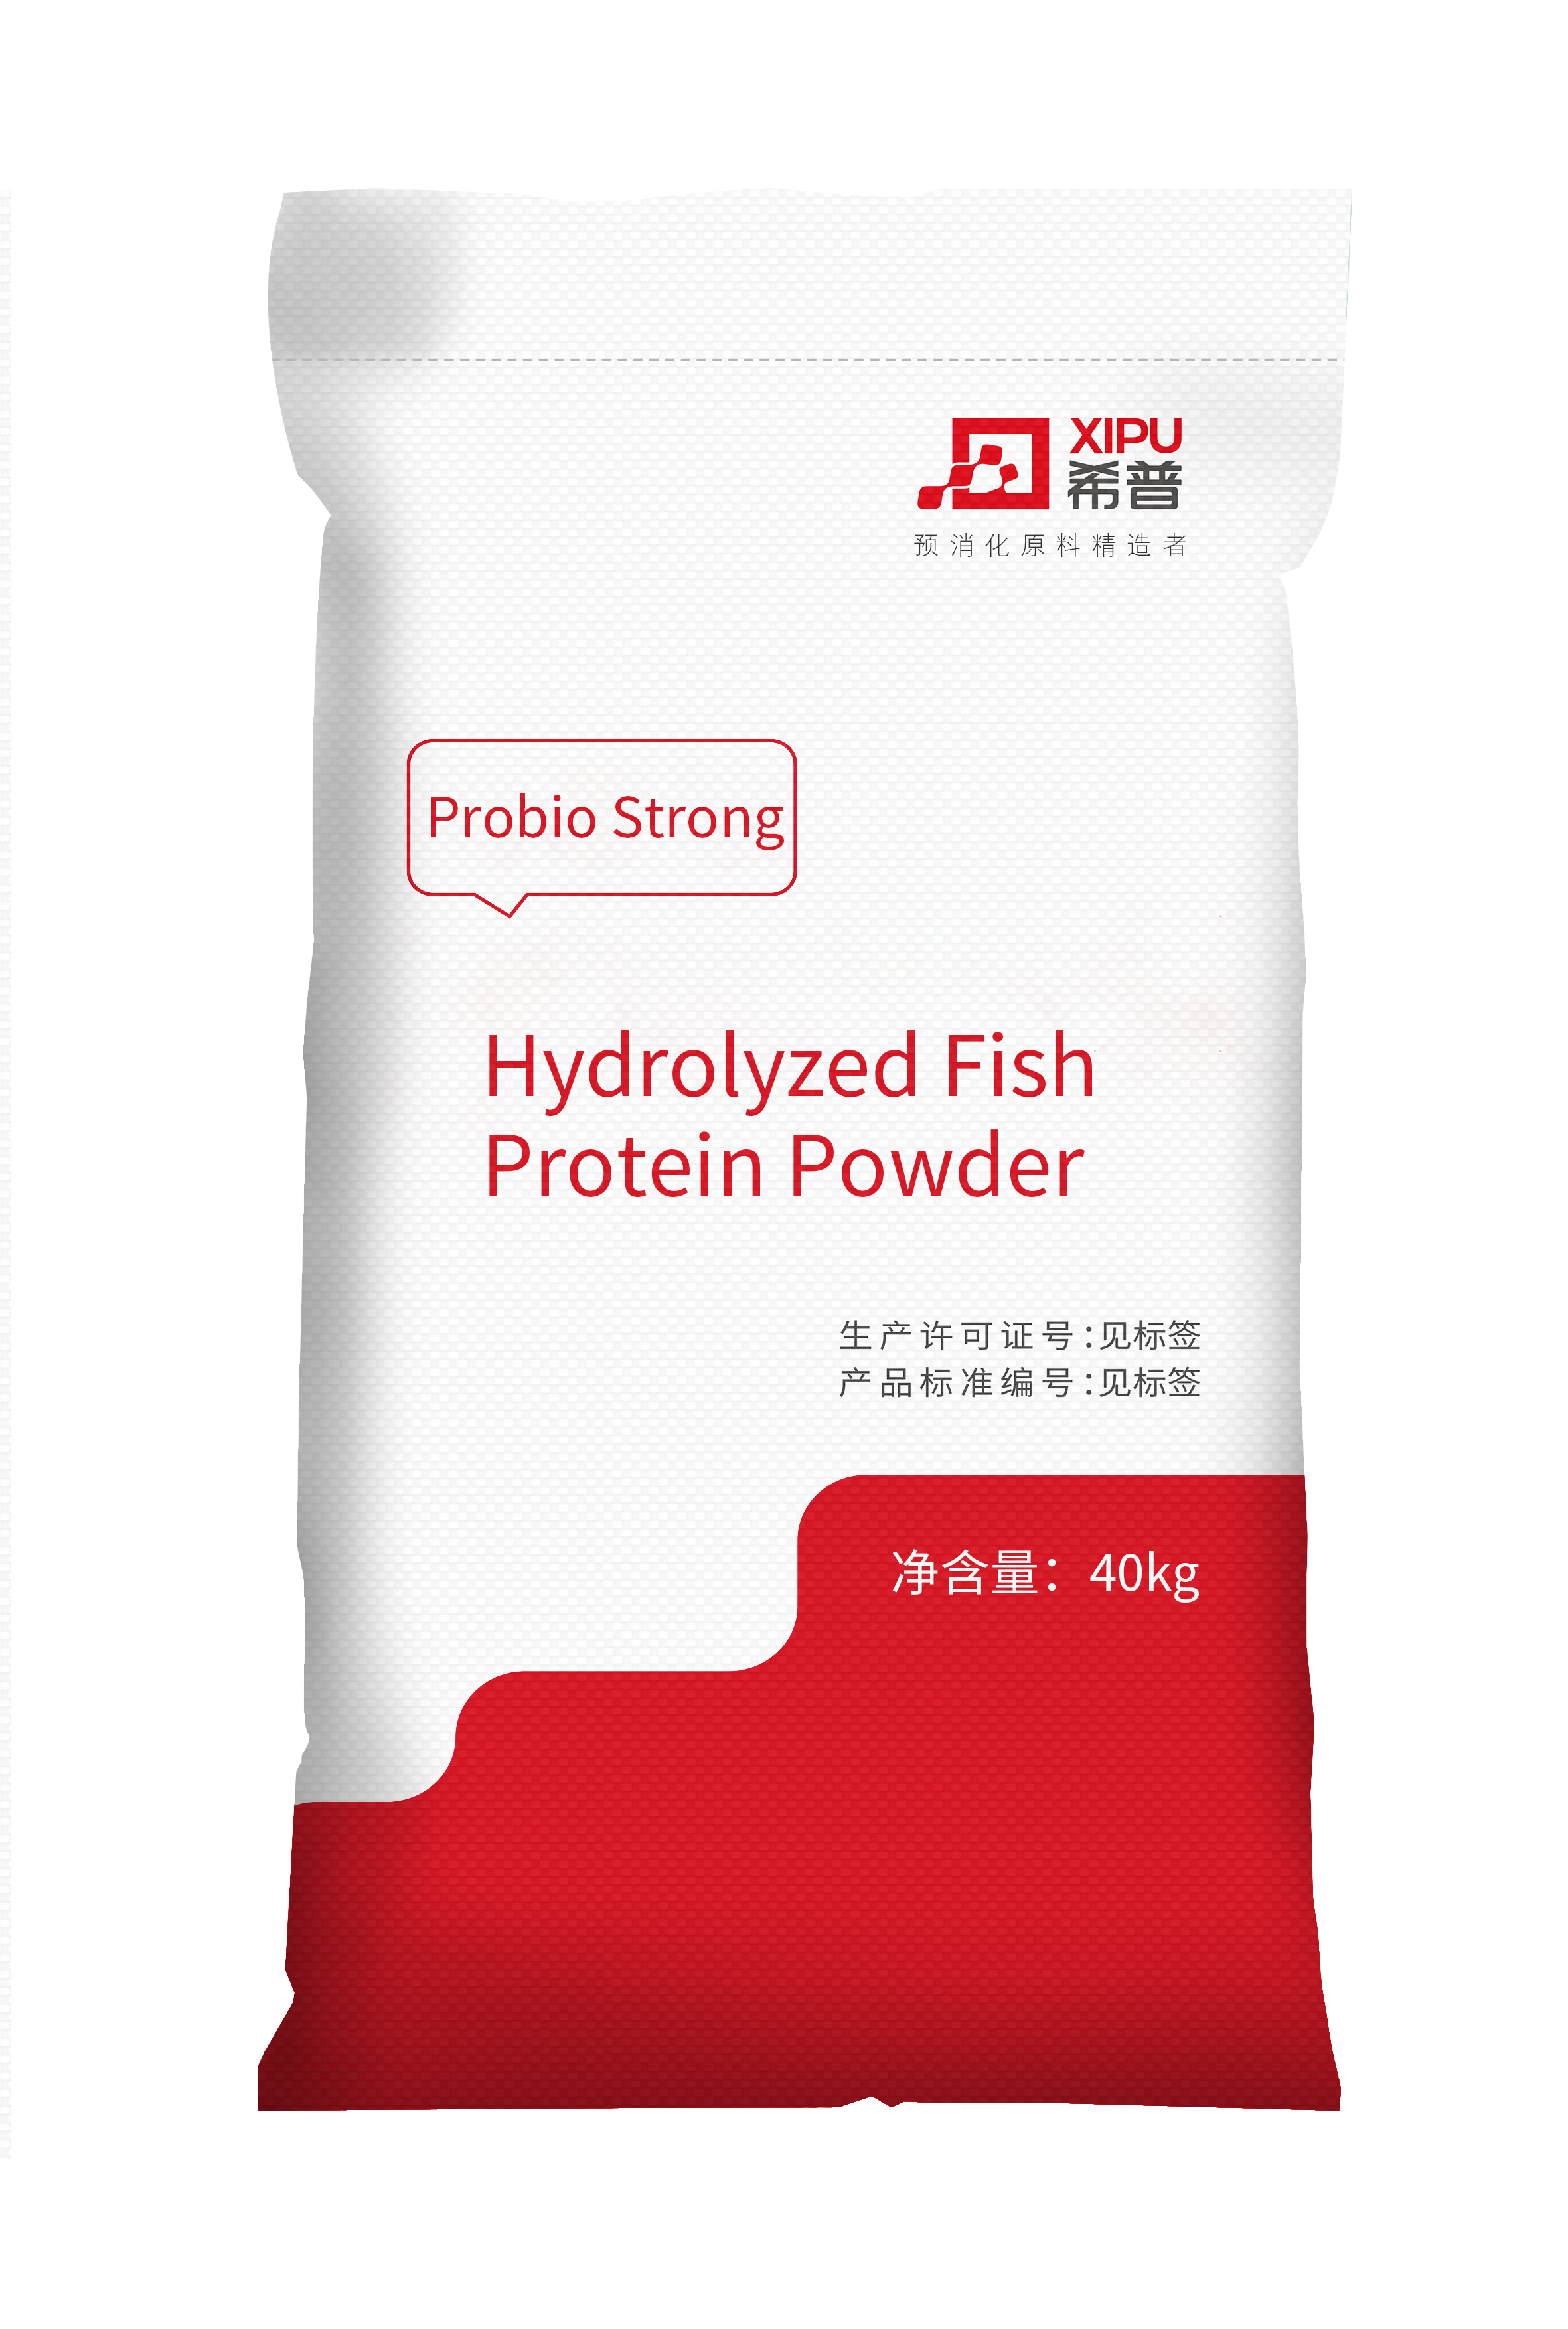 Probio Strong Hydrolyzed Fish Protein Powder